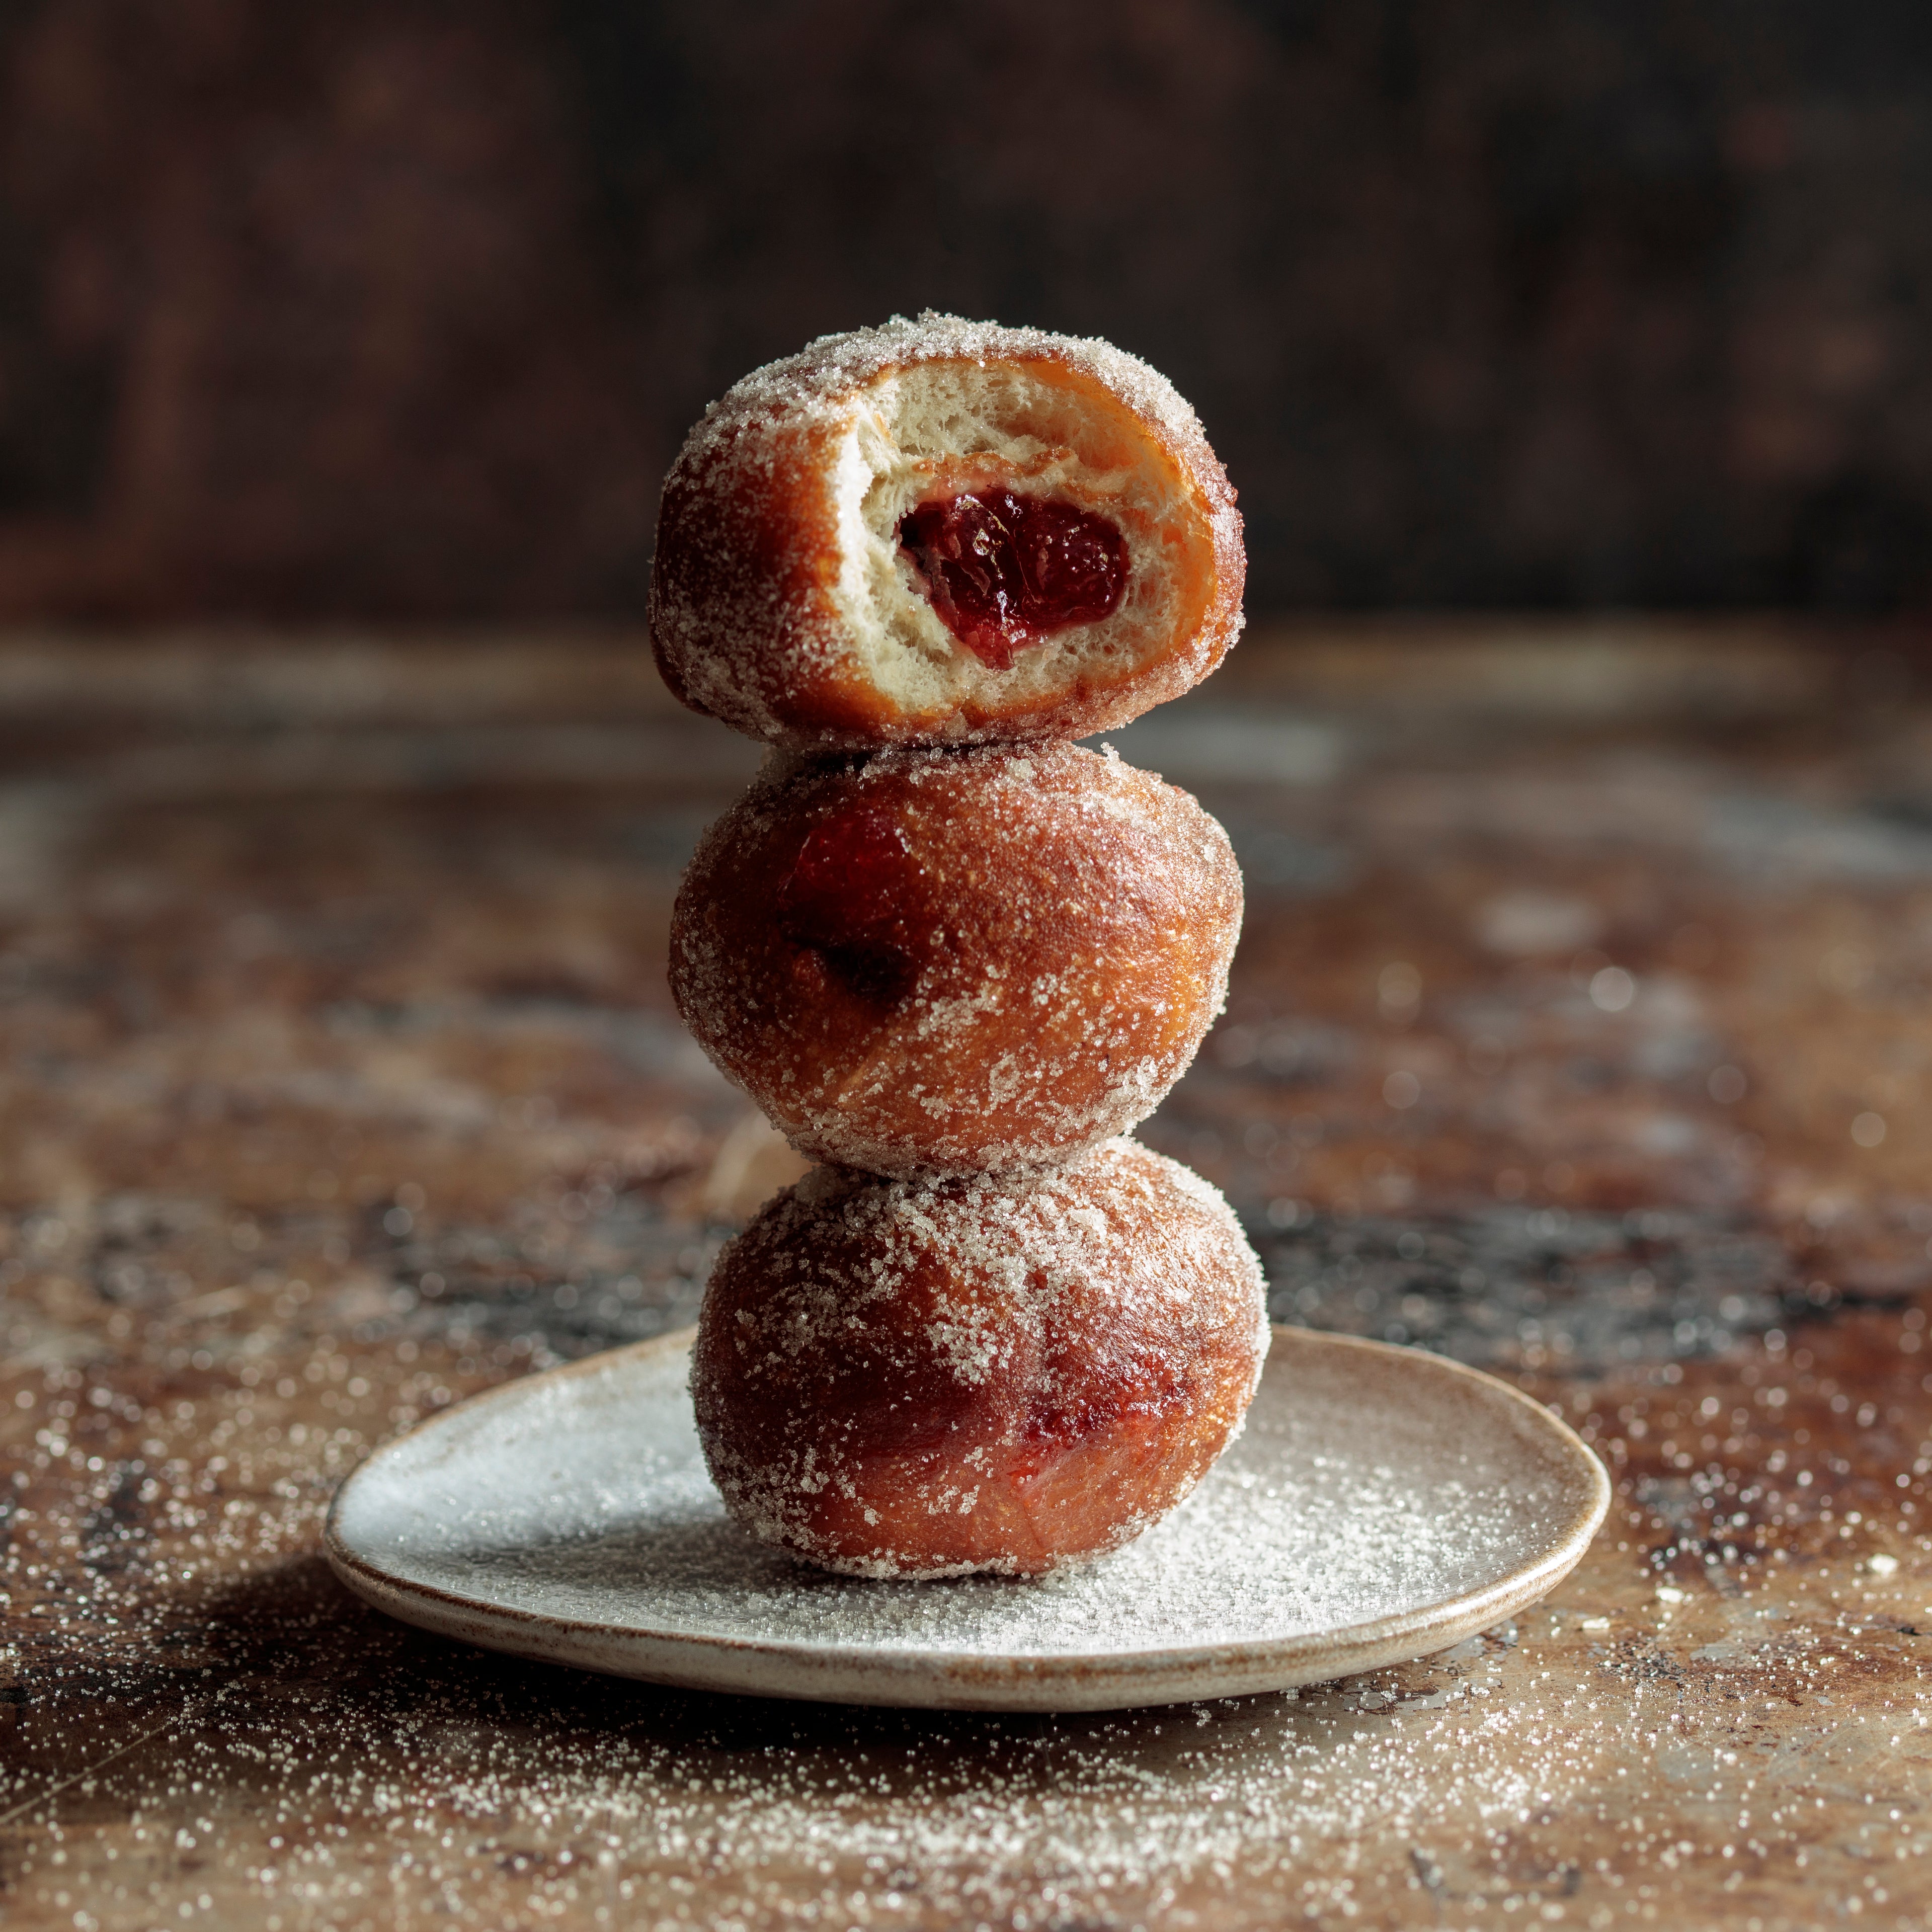 prosecco-jam-filled-doughnuts.jpg